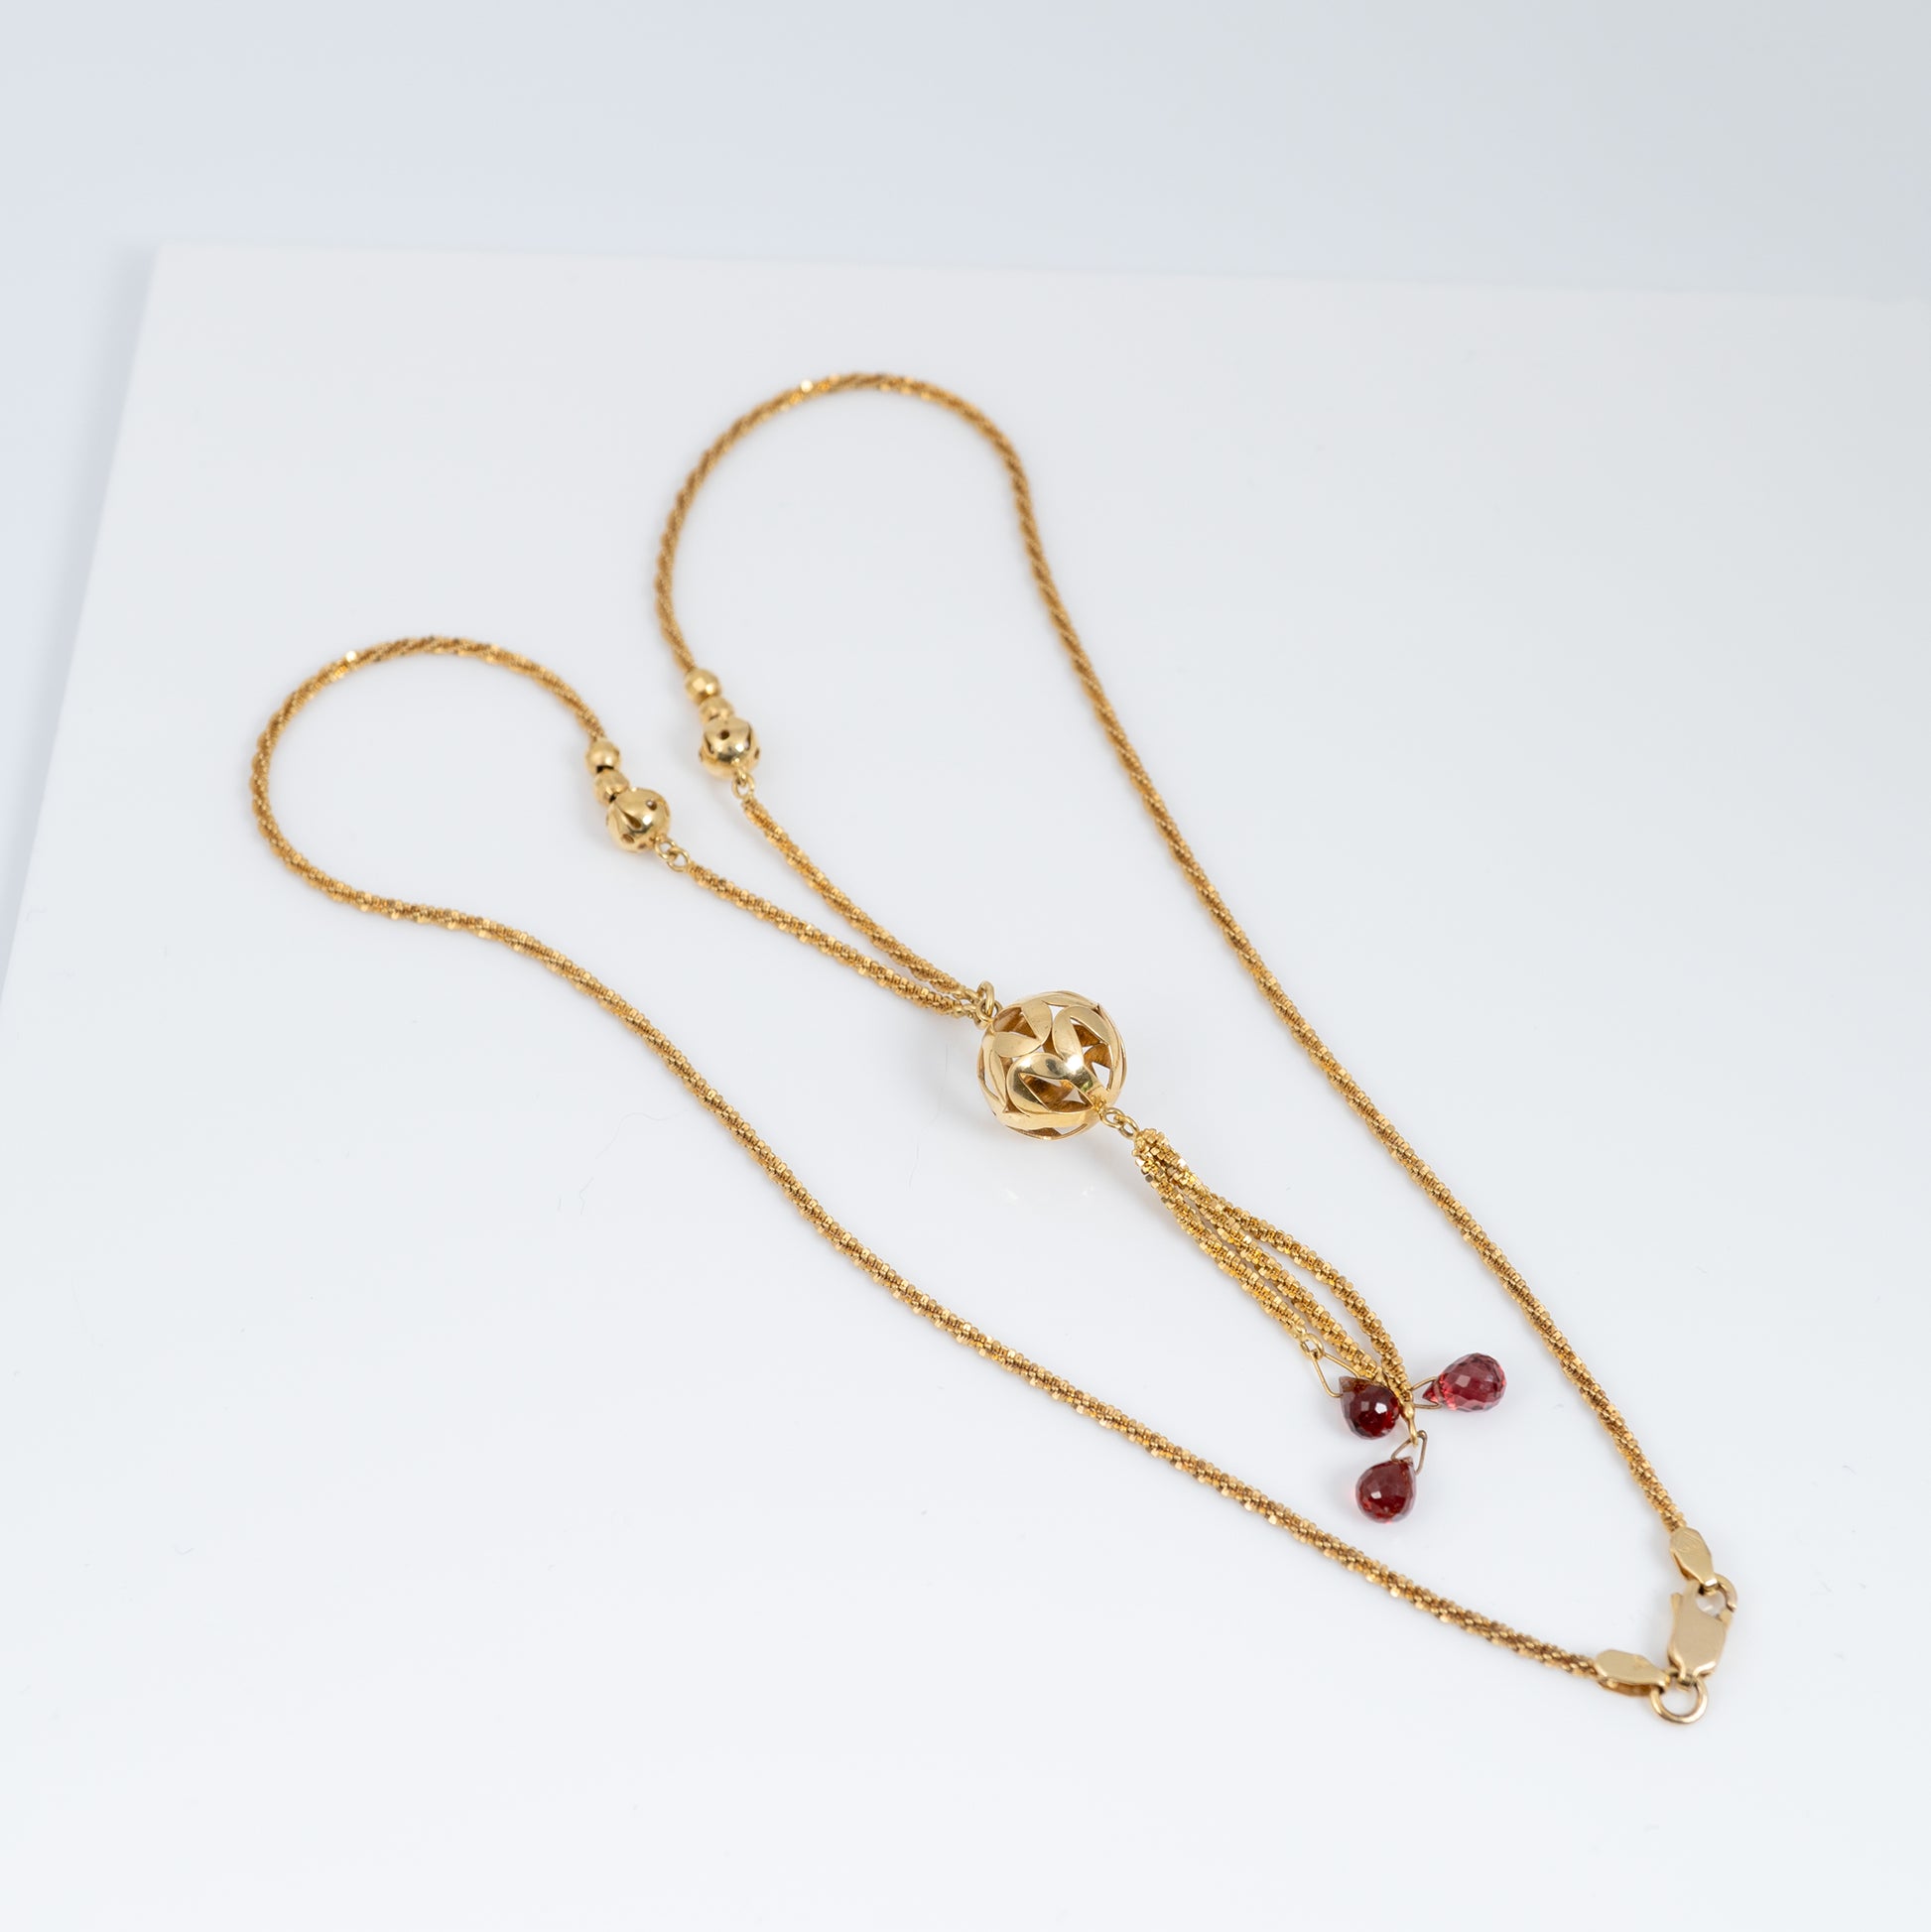 Vintage Style Gold Tassel Lariat Necklace with British Hallmarks